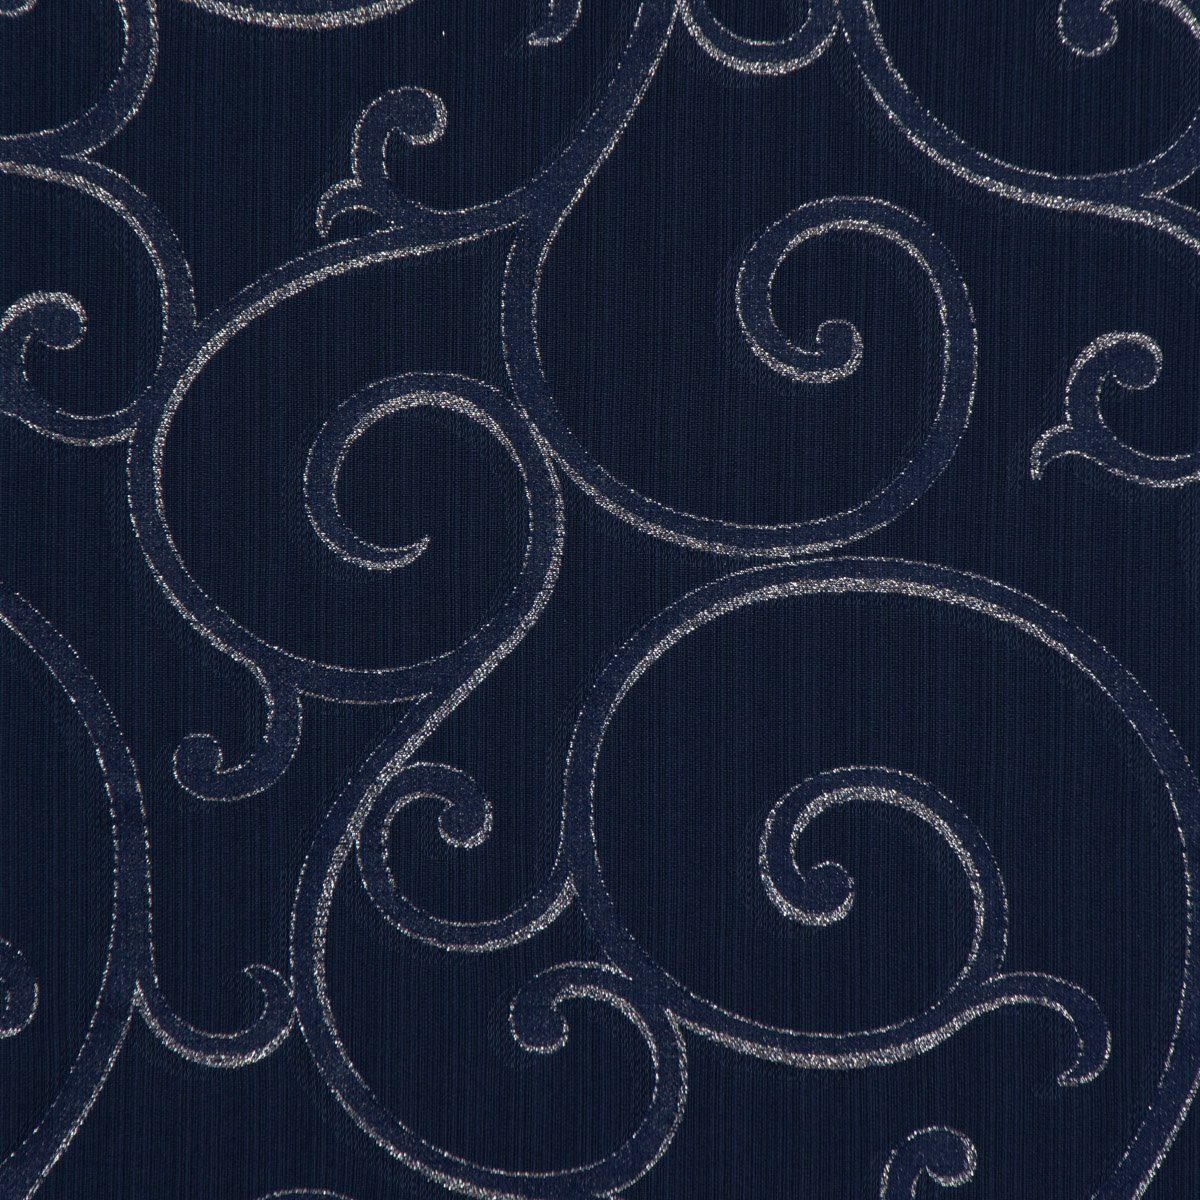 SCHÖNER LEBEN. Tischläufer SCHÖNER dunkelblau Tischläufer Lurex Schnörkel handmade silb, LEBEN. Ornamente